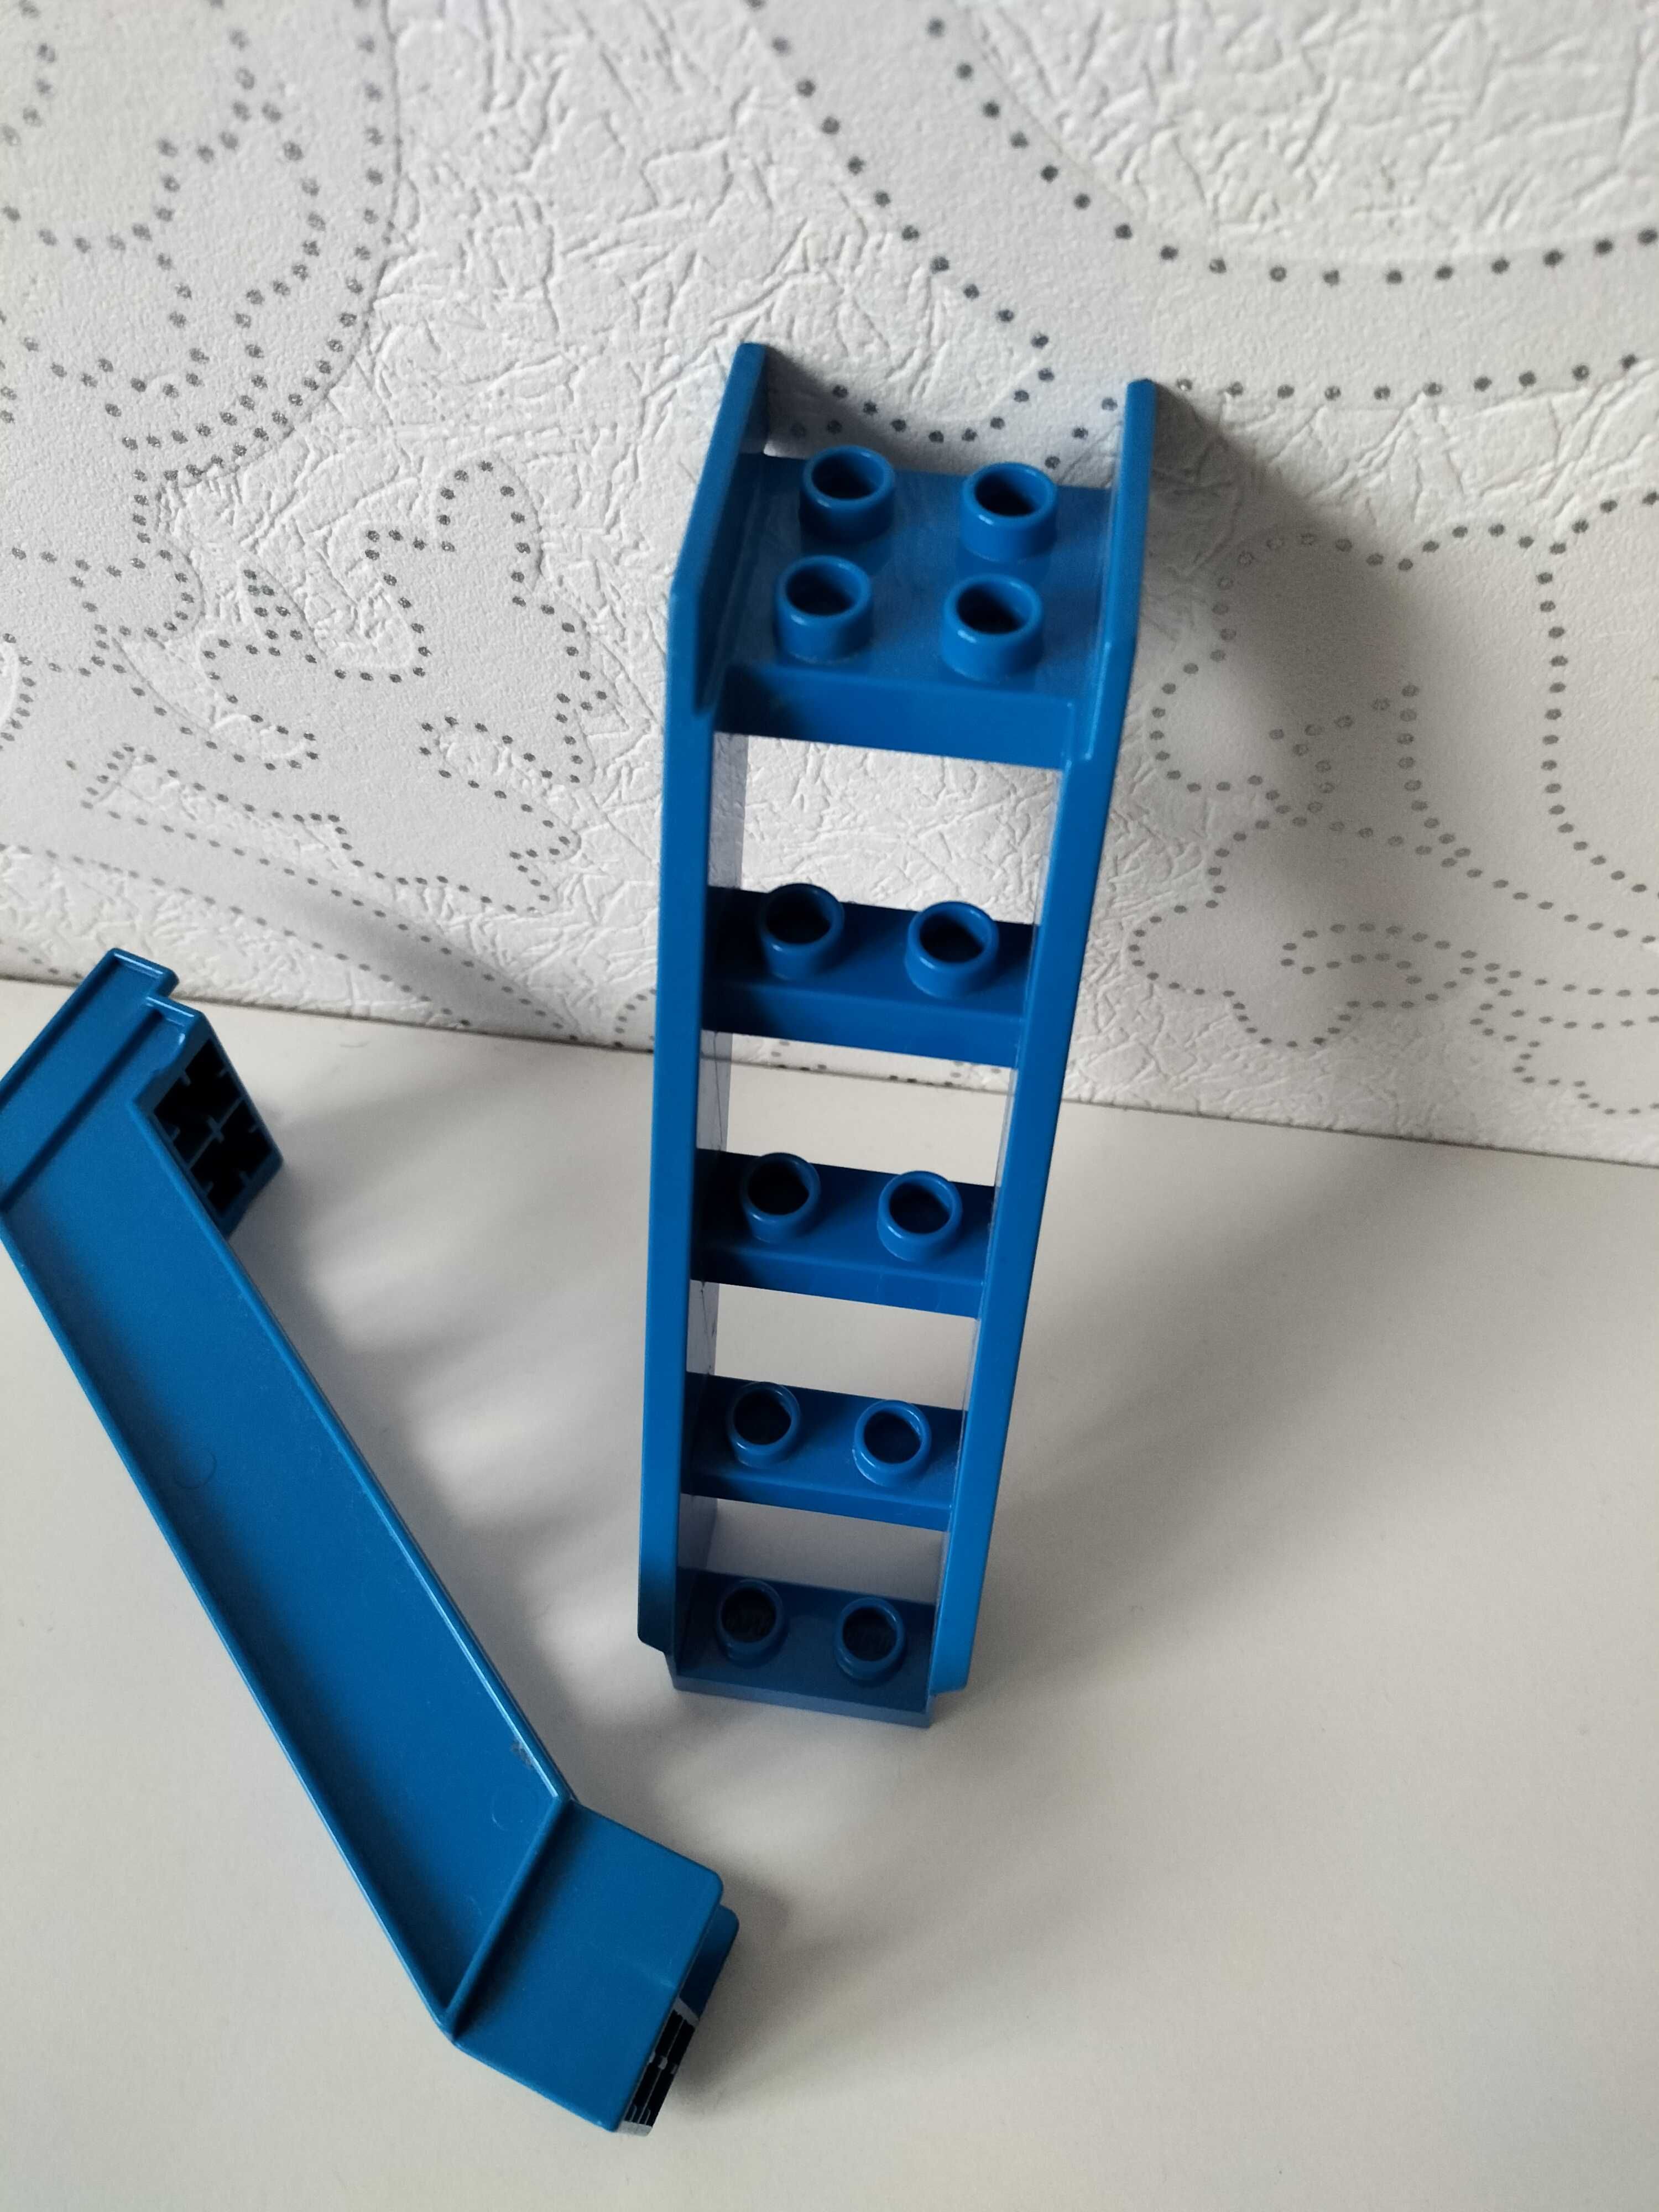 Lego duplo ZOO kasa klocek dźwiękowy świetlny karuzela